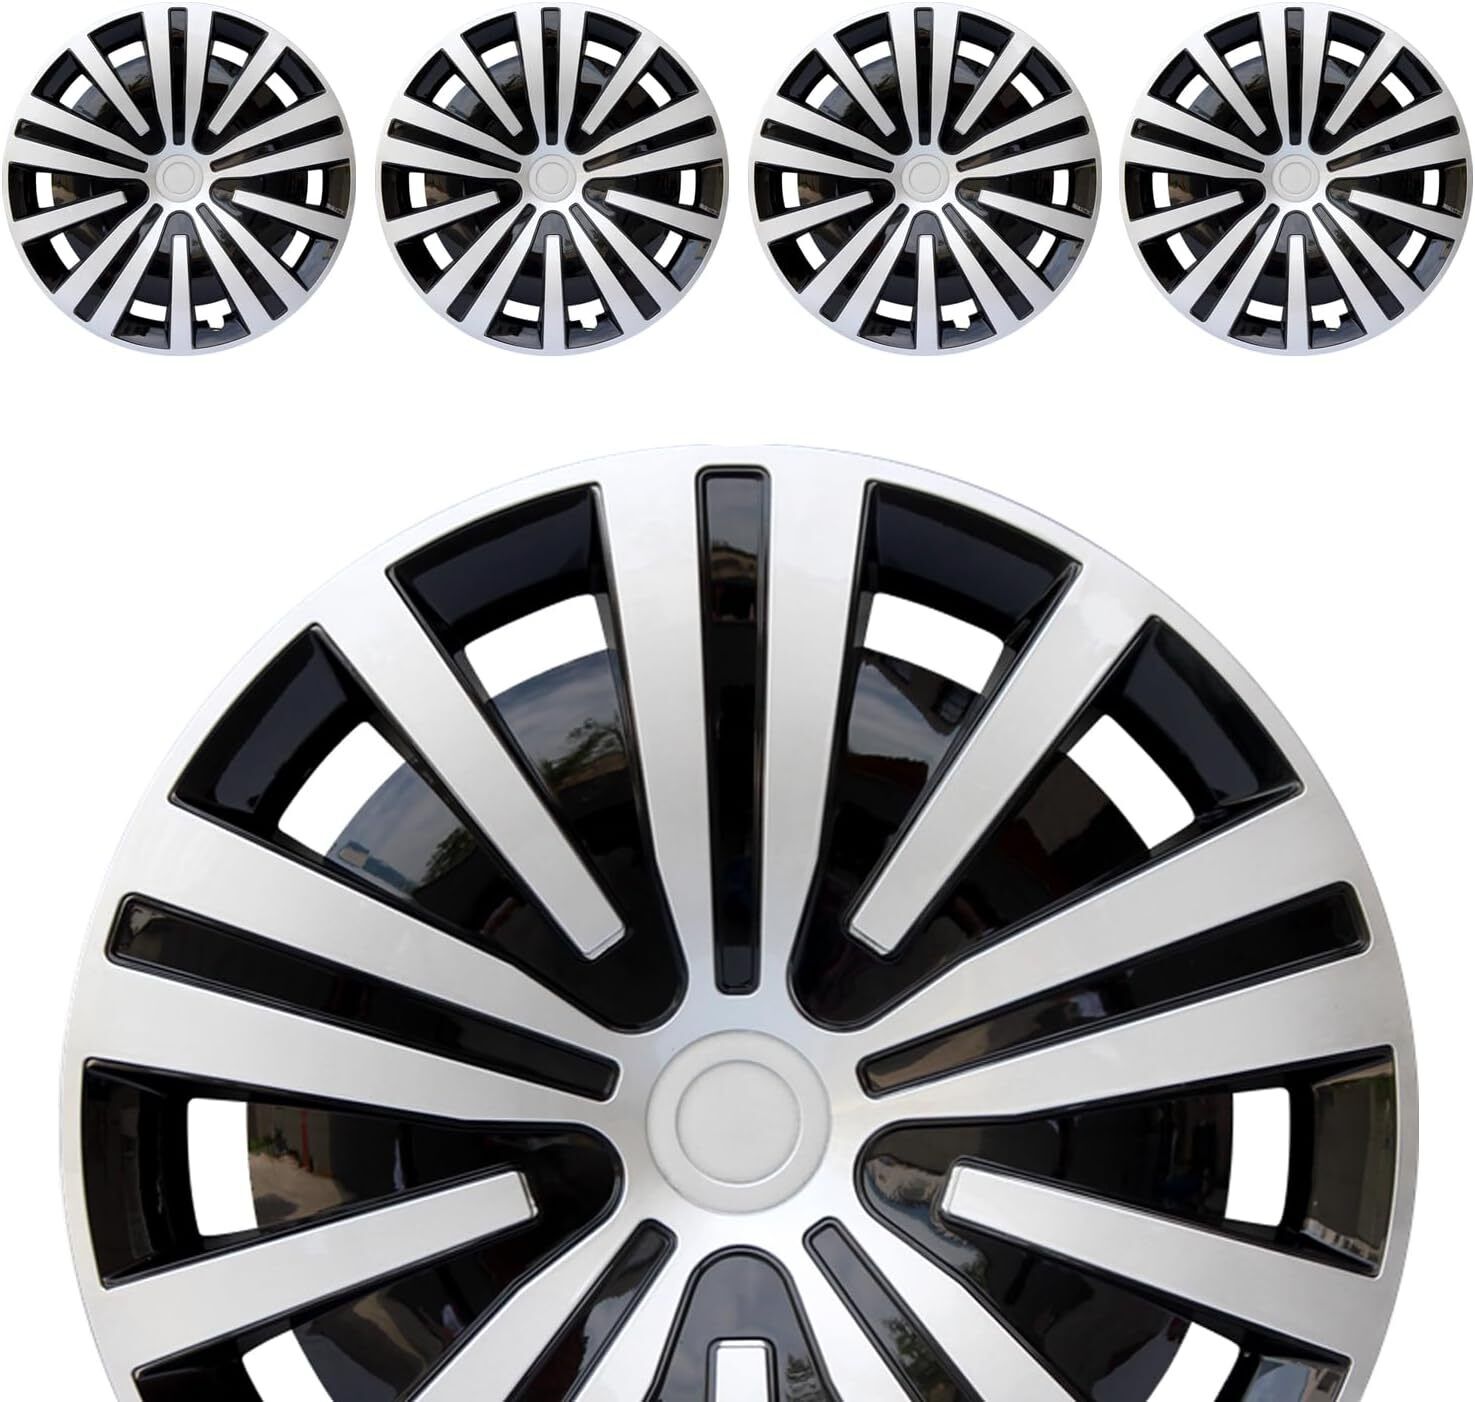 4PC Wheel Hub Covers for R14 Rim, 14